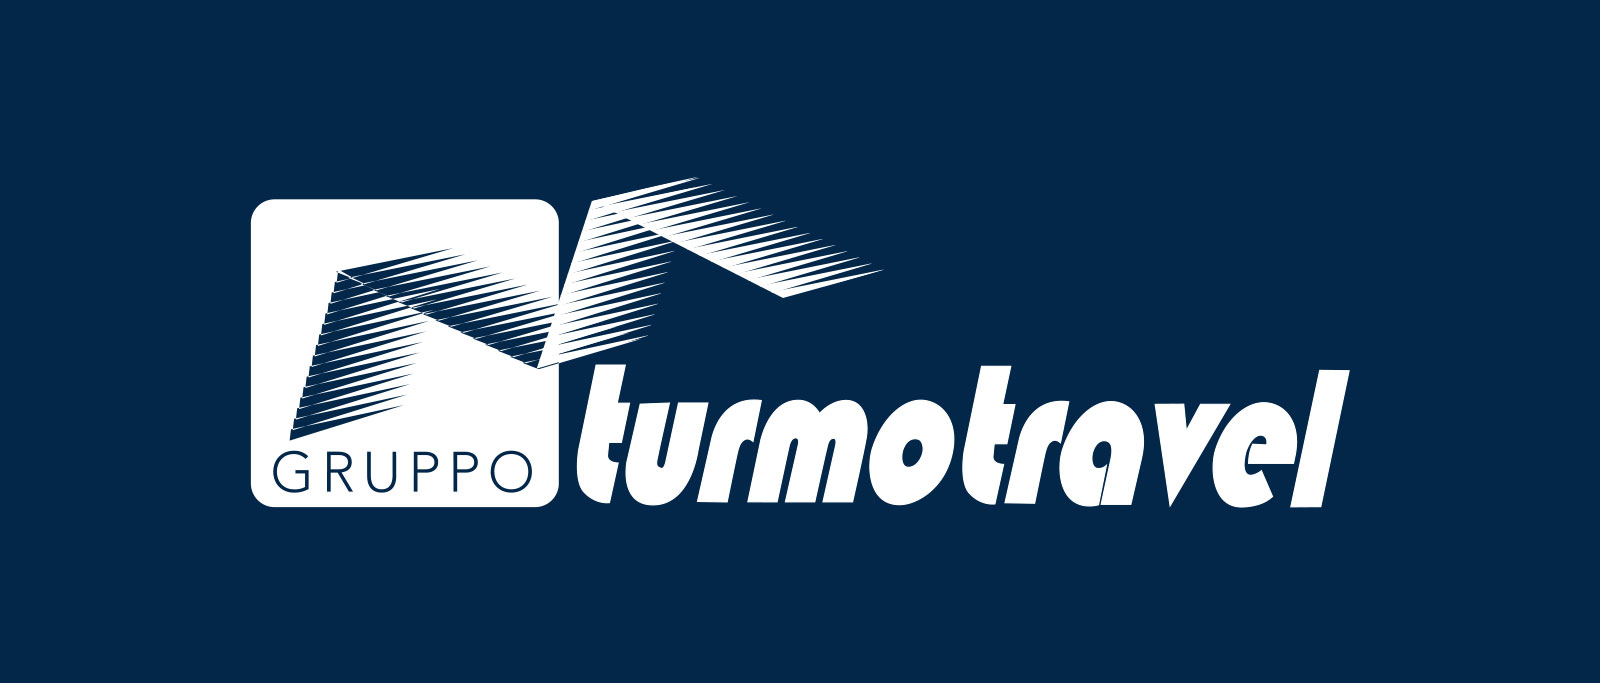 Intervista al Managing Director Massimiliano Molinu del Gruppo Turmo Travel